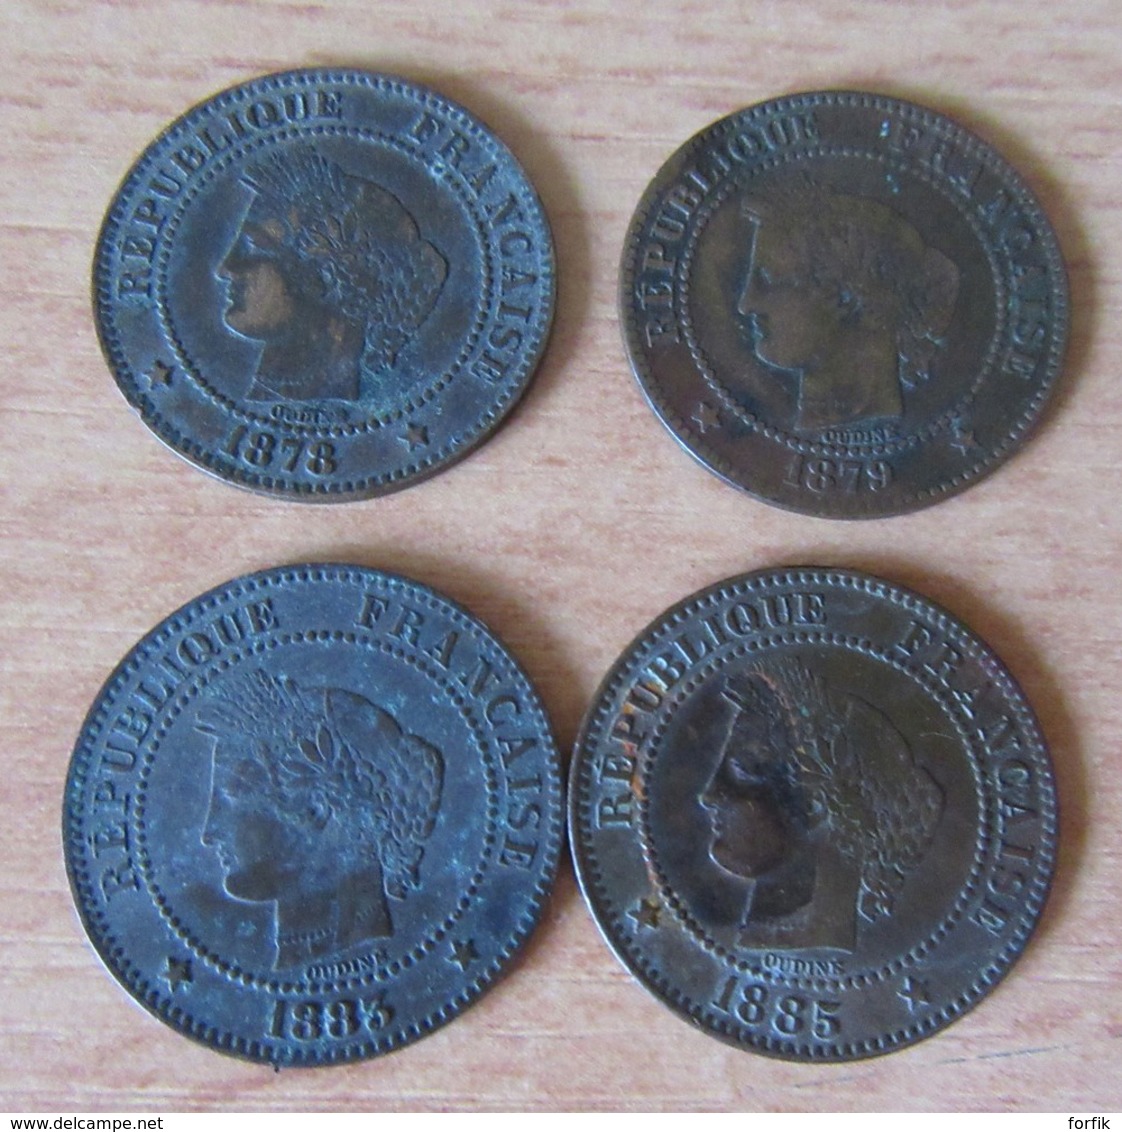 France - Petite collection de 24 monnaies 2 centimes Napoléon III et Cérès 1853 à 1895 - Détails dans la description